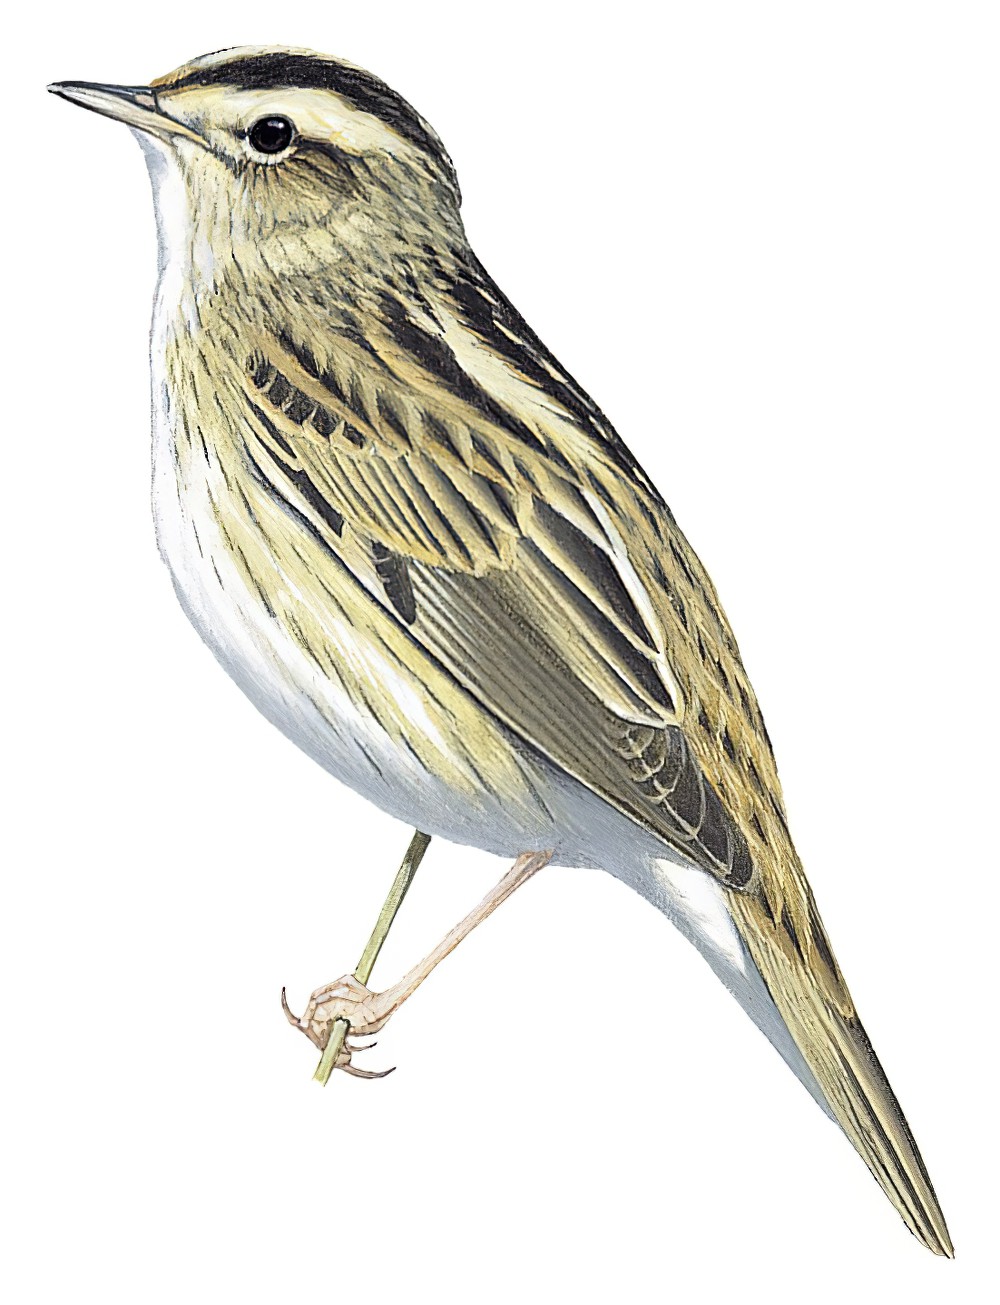 水栖苇莺 / Aquatic Warbler / Acrocephalus paludicola